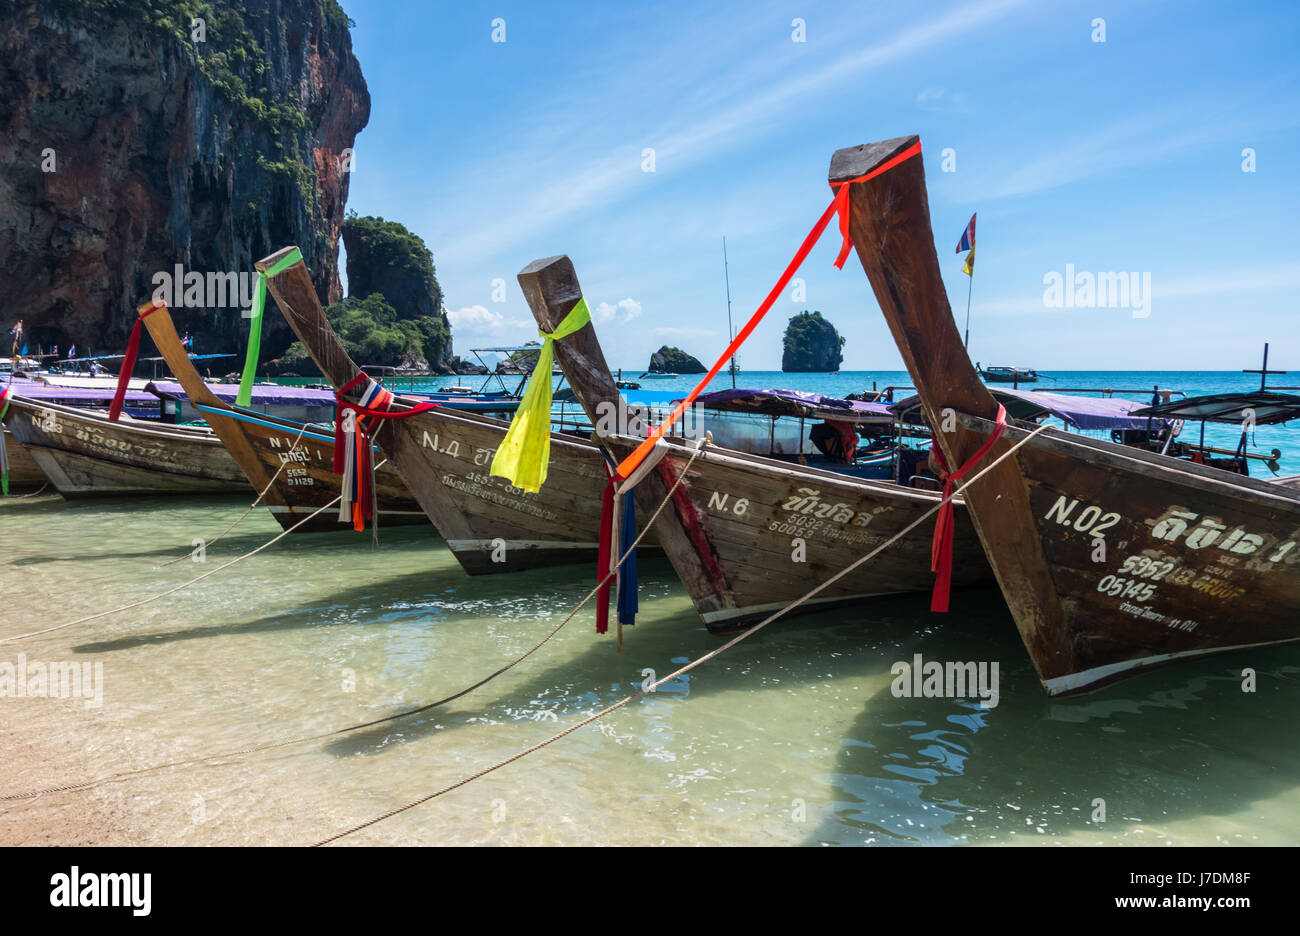 Long-tail boats at Phra Nang Beach, Railay, Krabi, Thailand Stock Photo